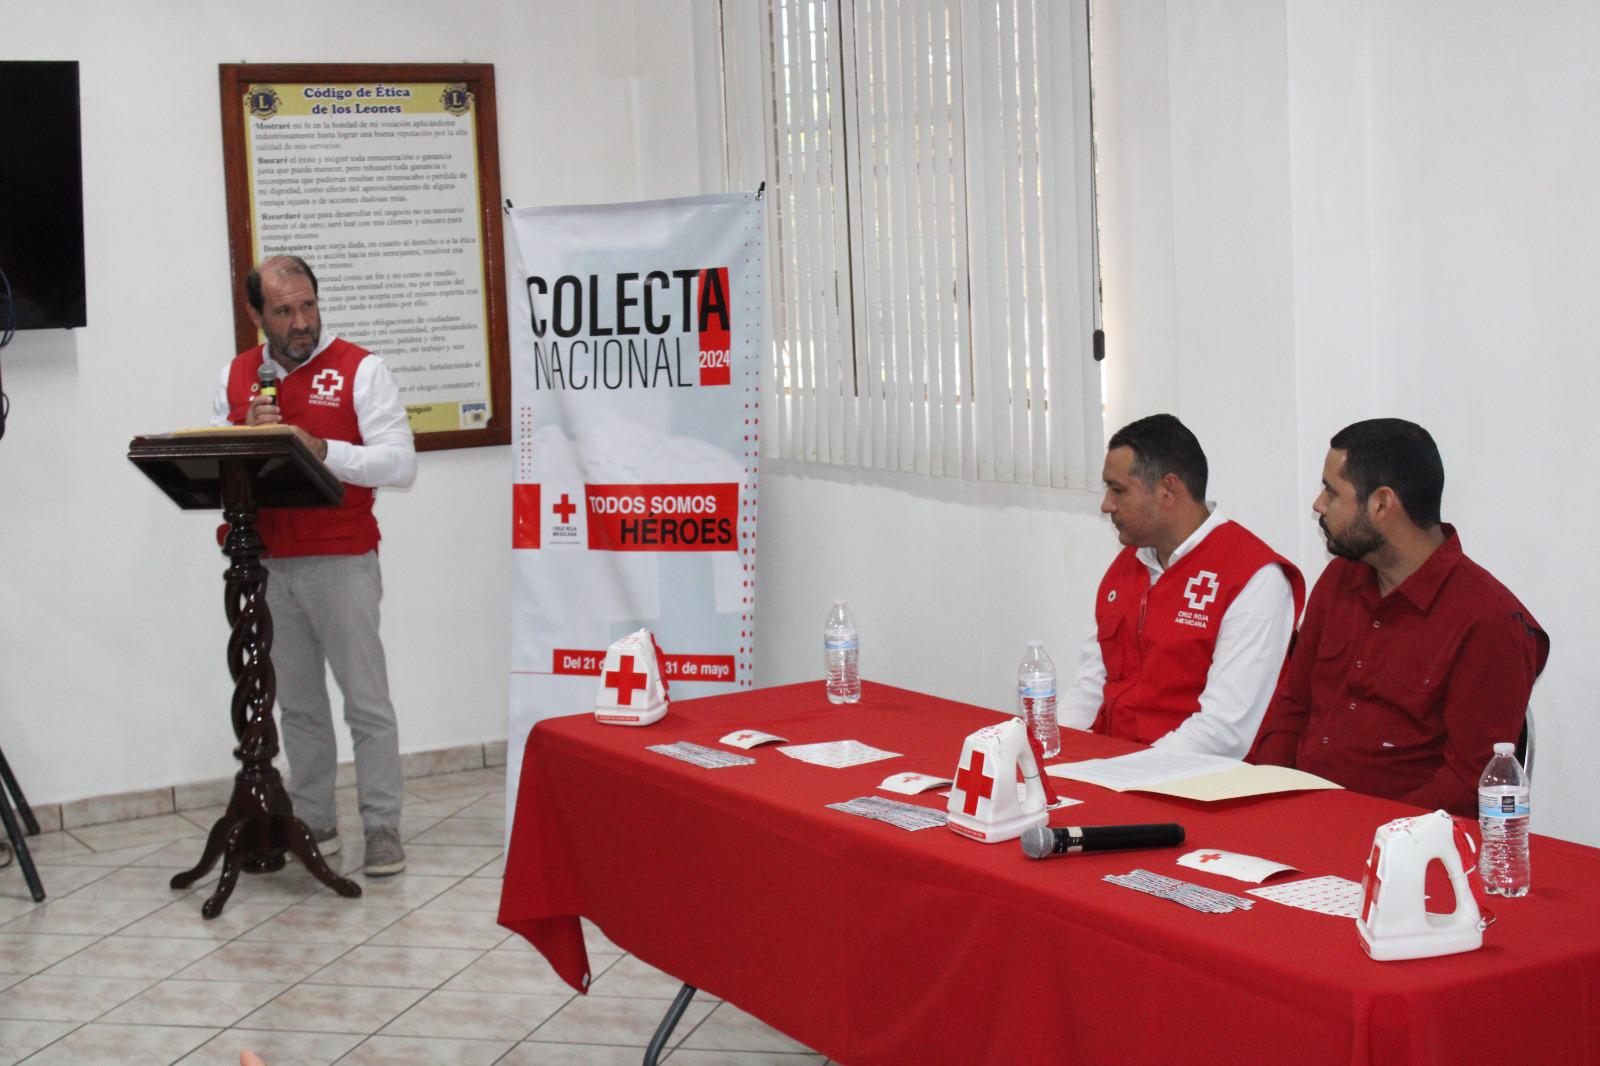 $!Colecta representa el 33 por ciento del gasto de Cruz Roja: Carlos Bloch Artola